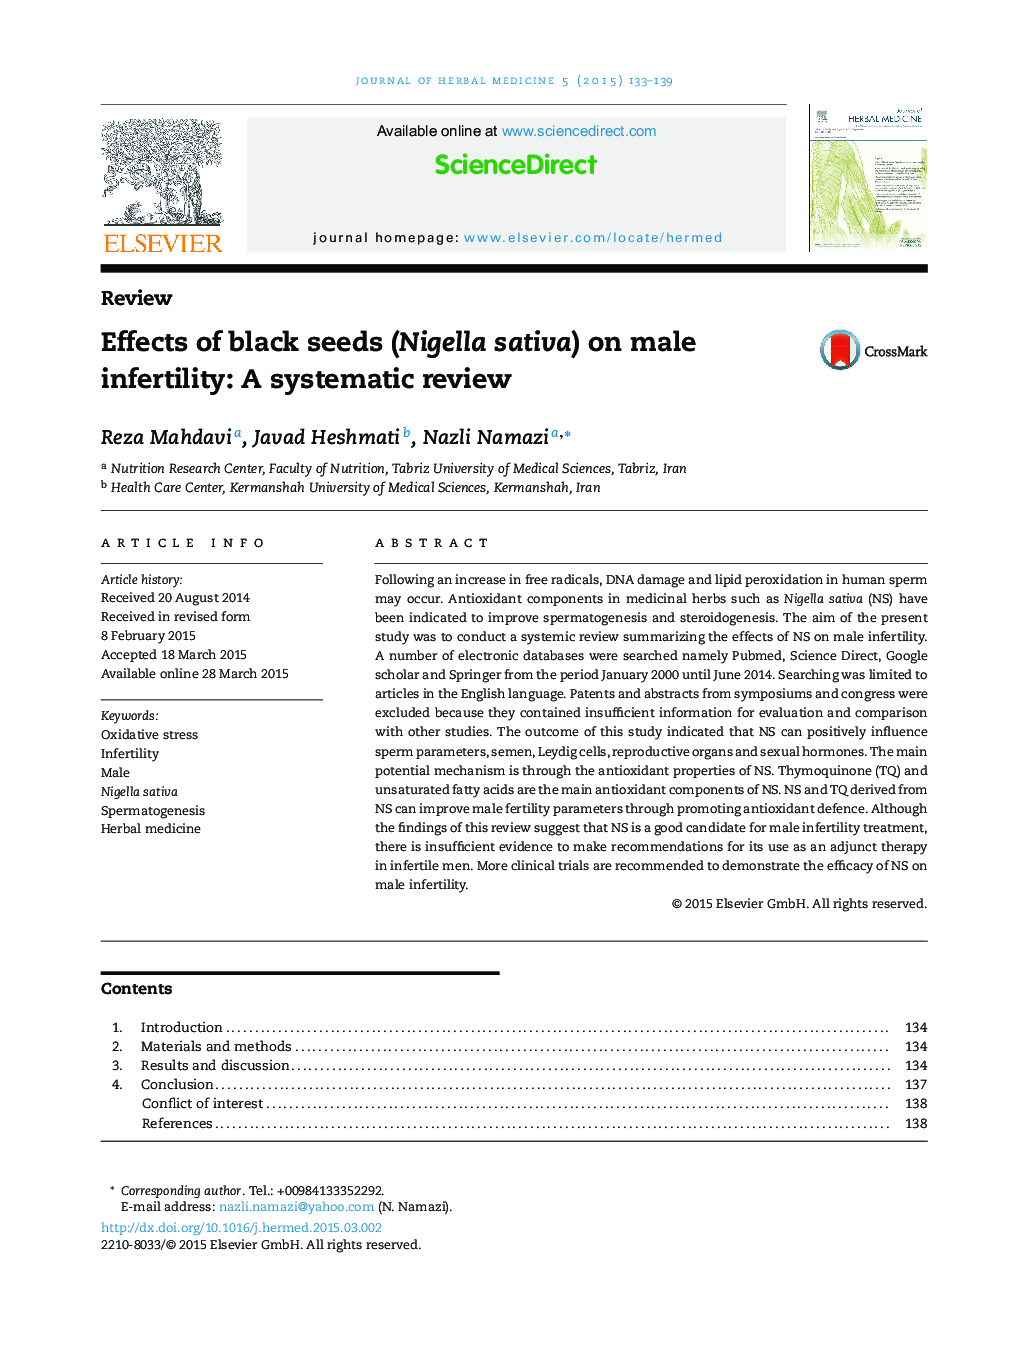 اثرات دانه های سیاه دانه (Nigella sativa) بر ناباروری مردان: بررسی سیستماتیک